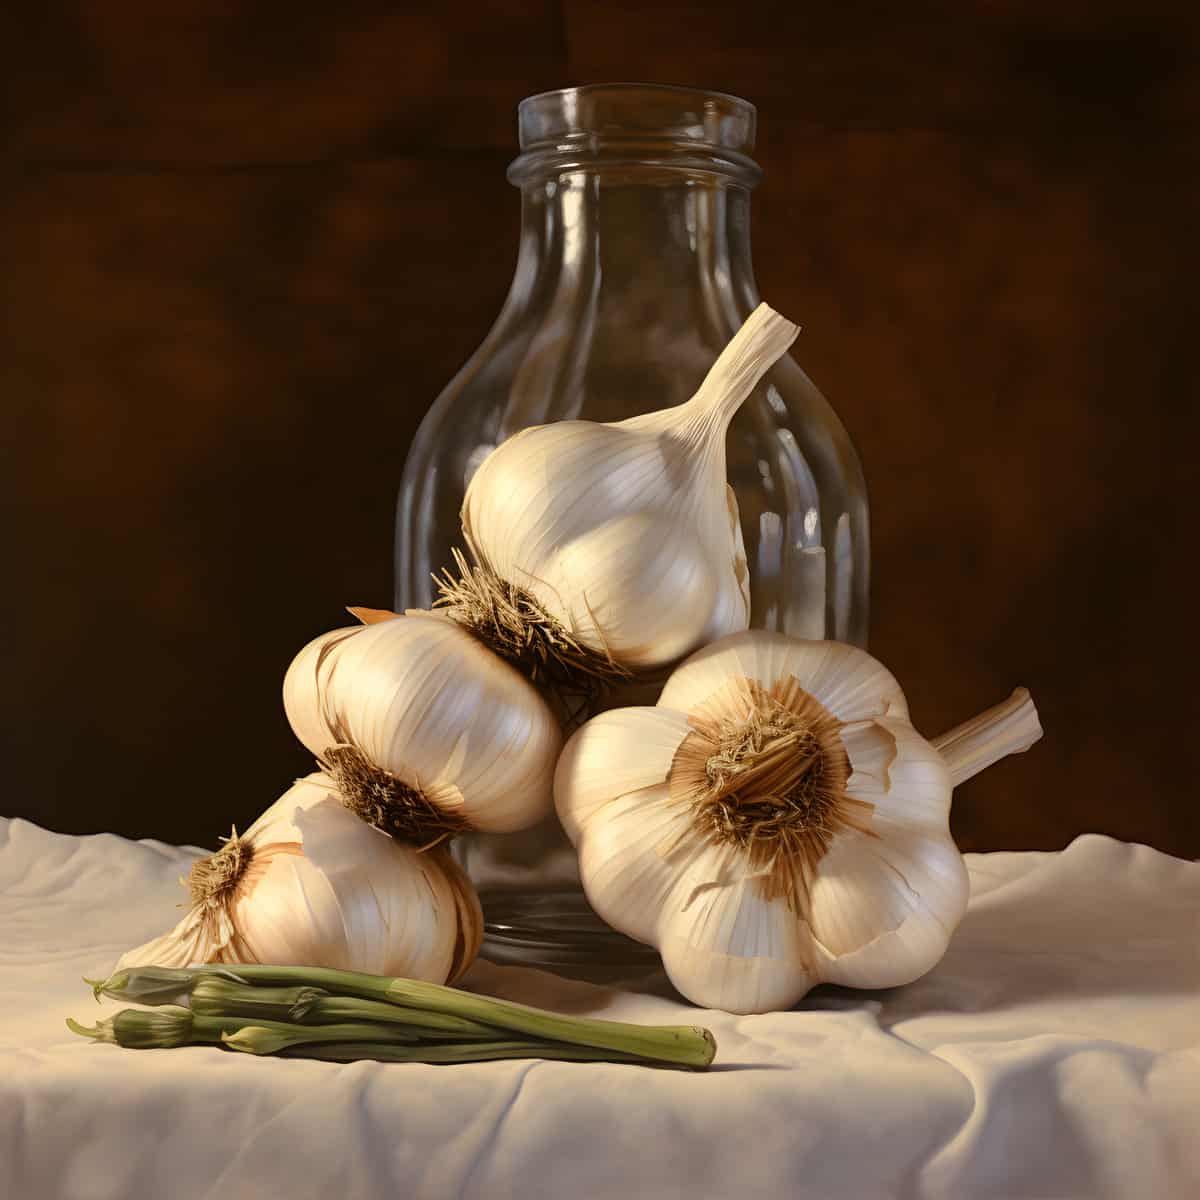 Garlic on a kitchen counter